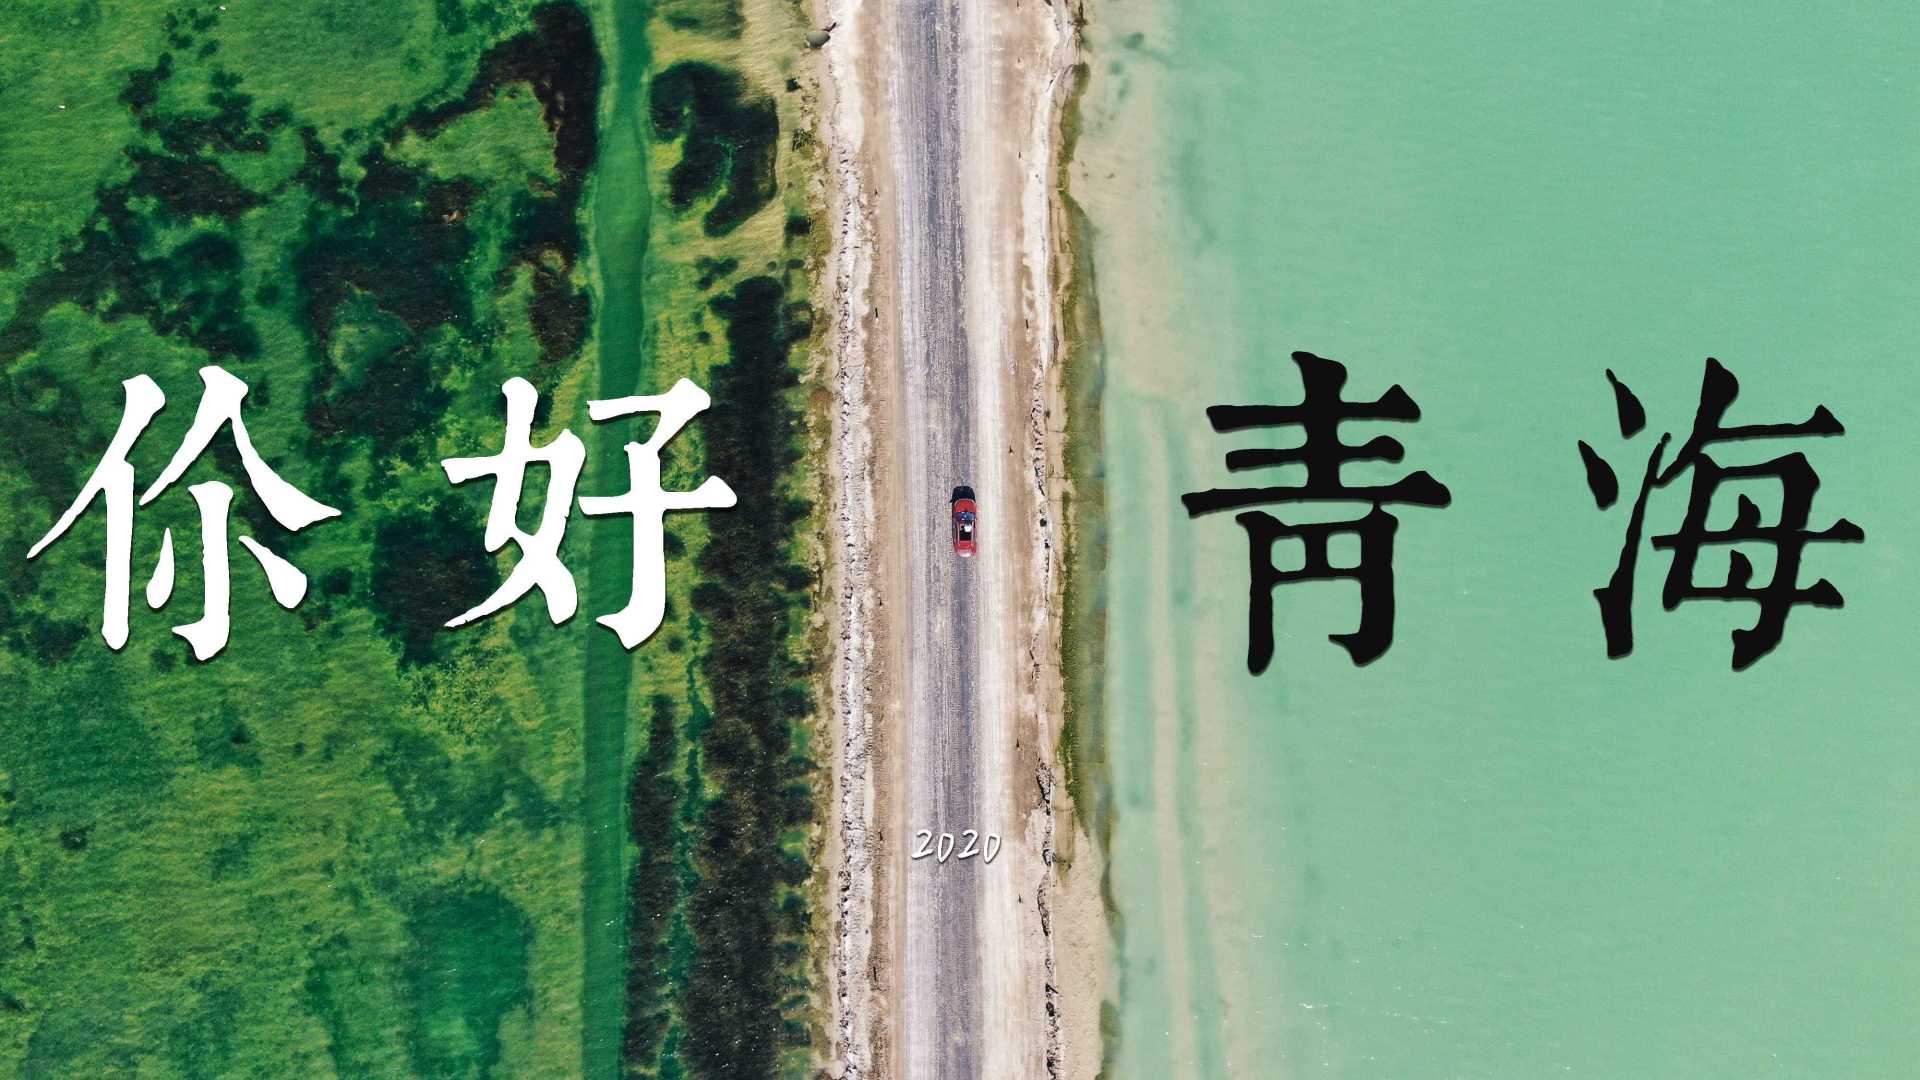 【自驾西北】青海大环线深度自驾旅行短片 | 你的一生值得一次公路旅行